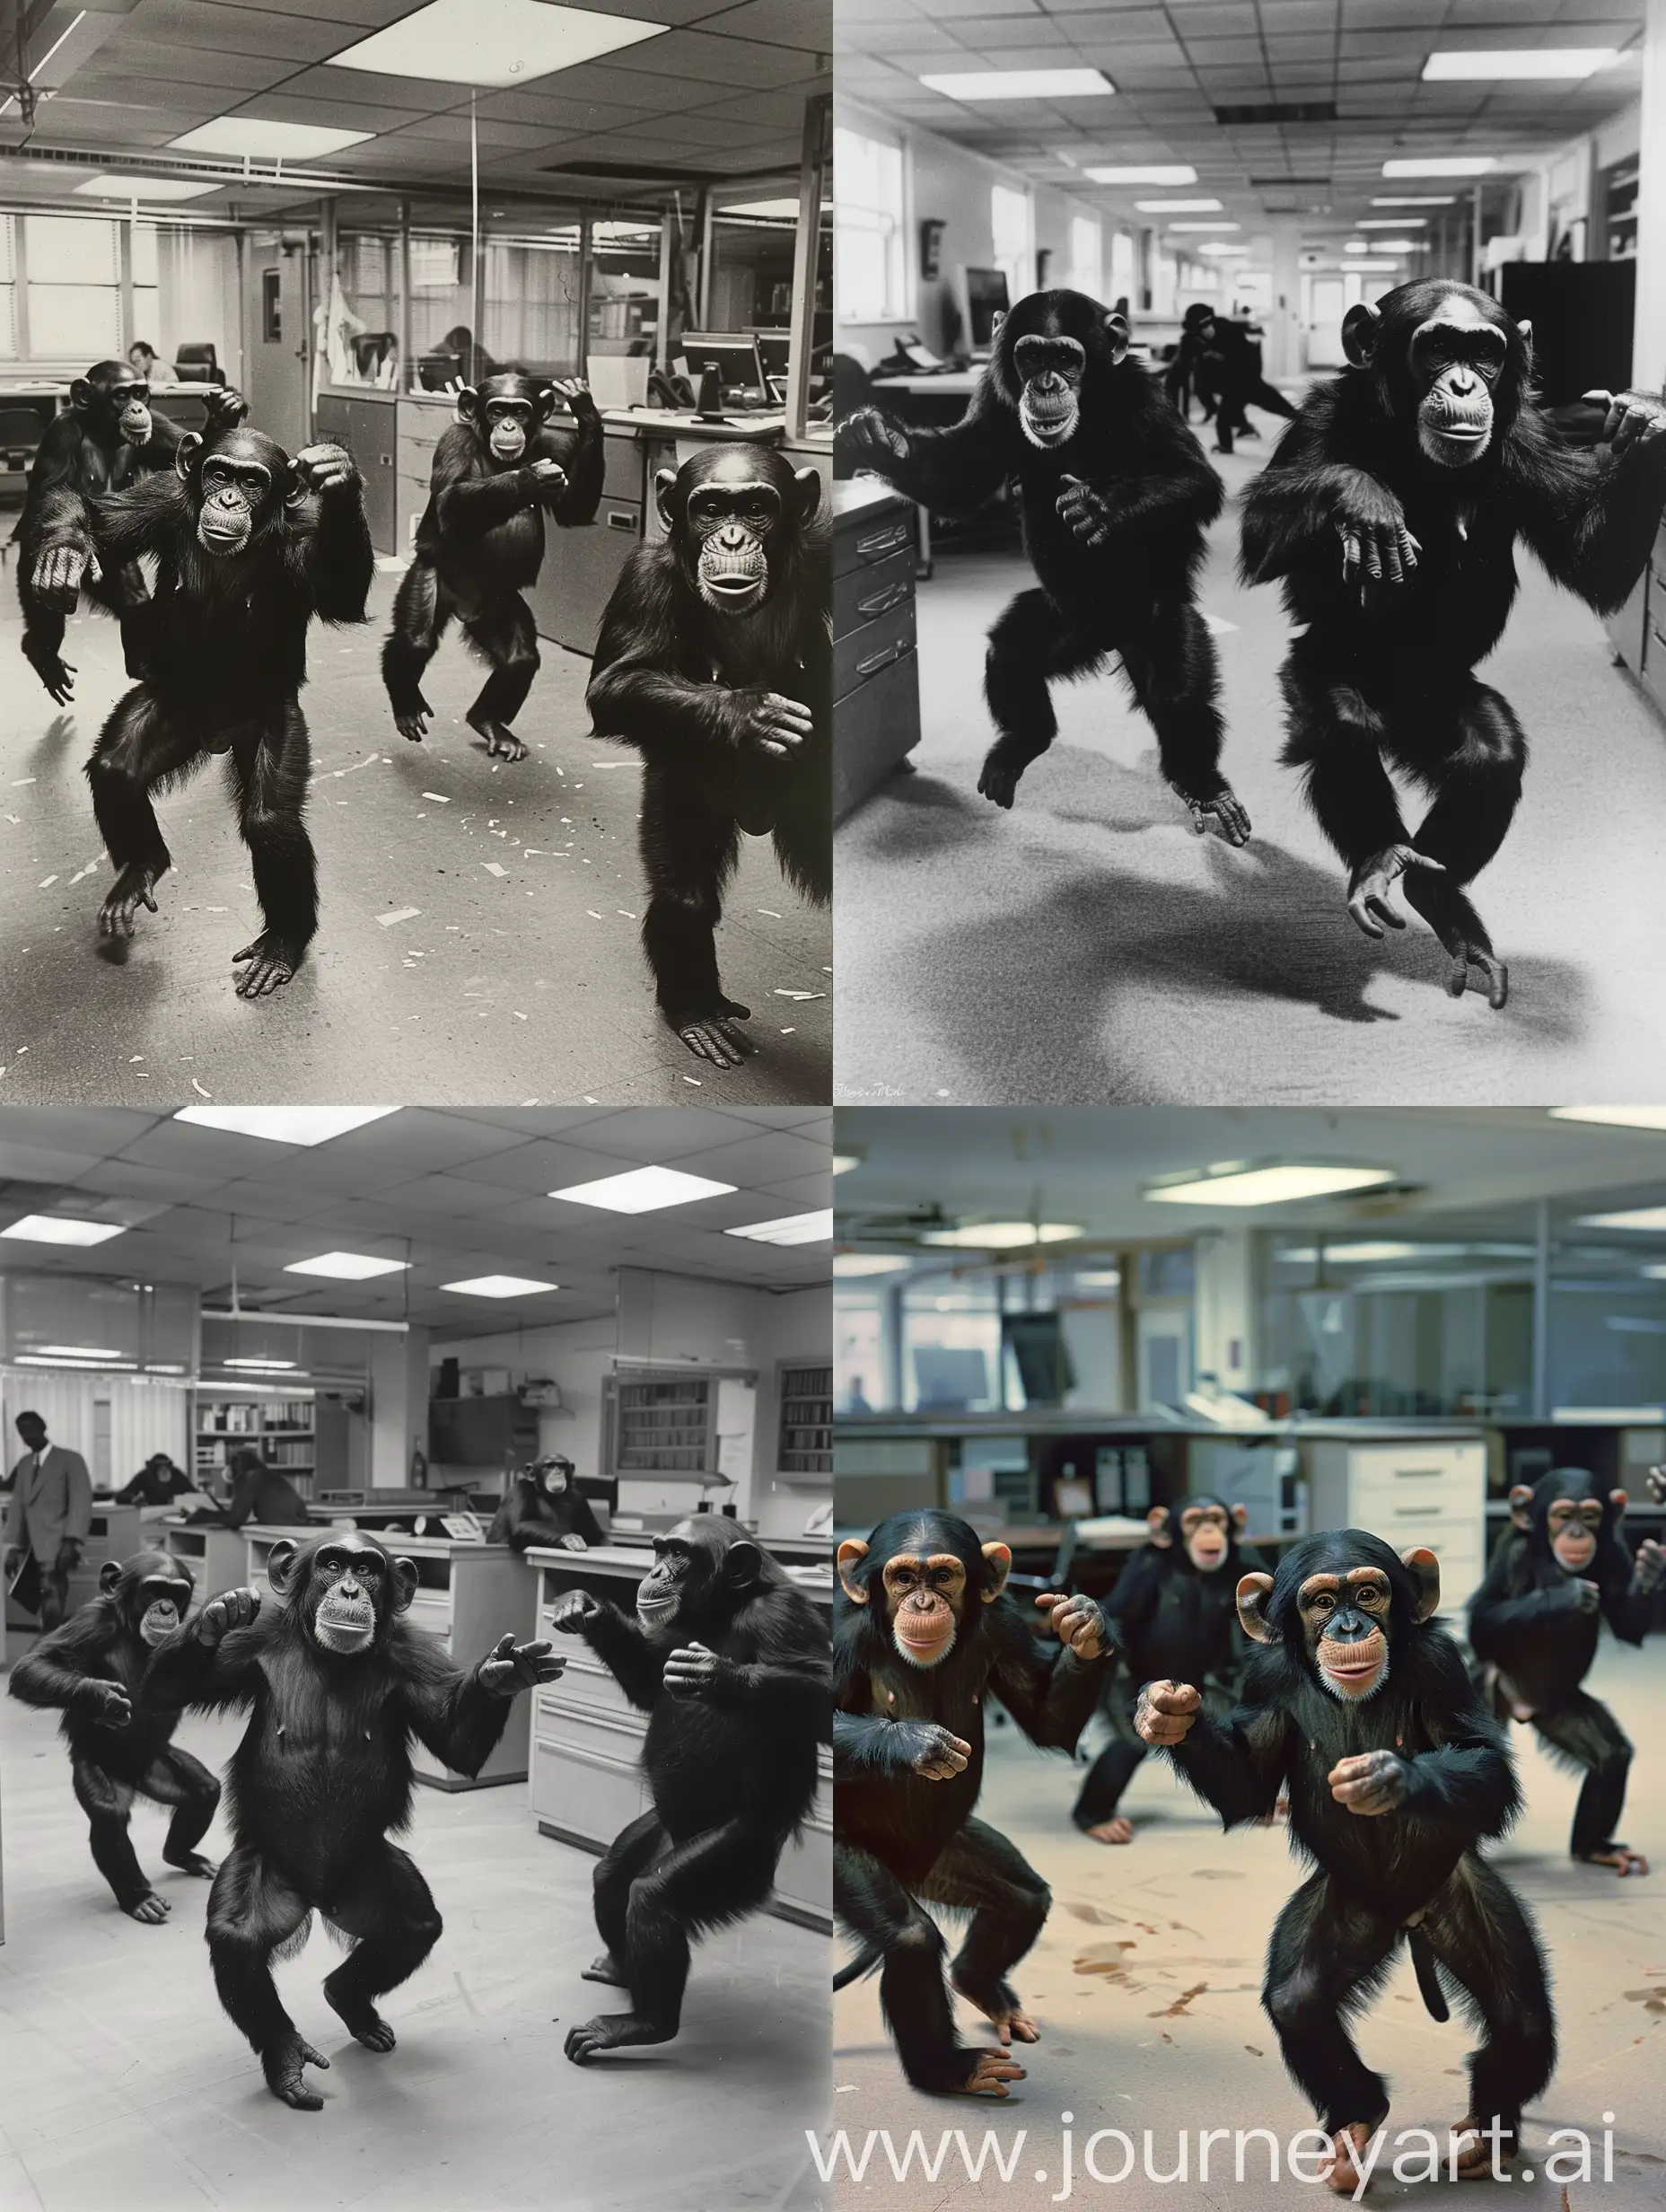 monkeys dancing in an office, 1980